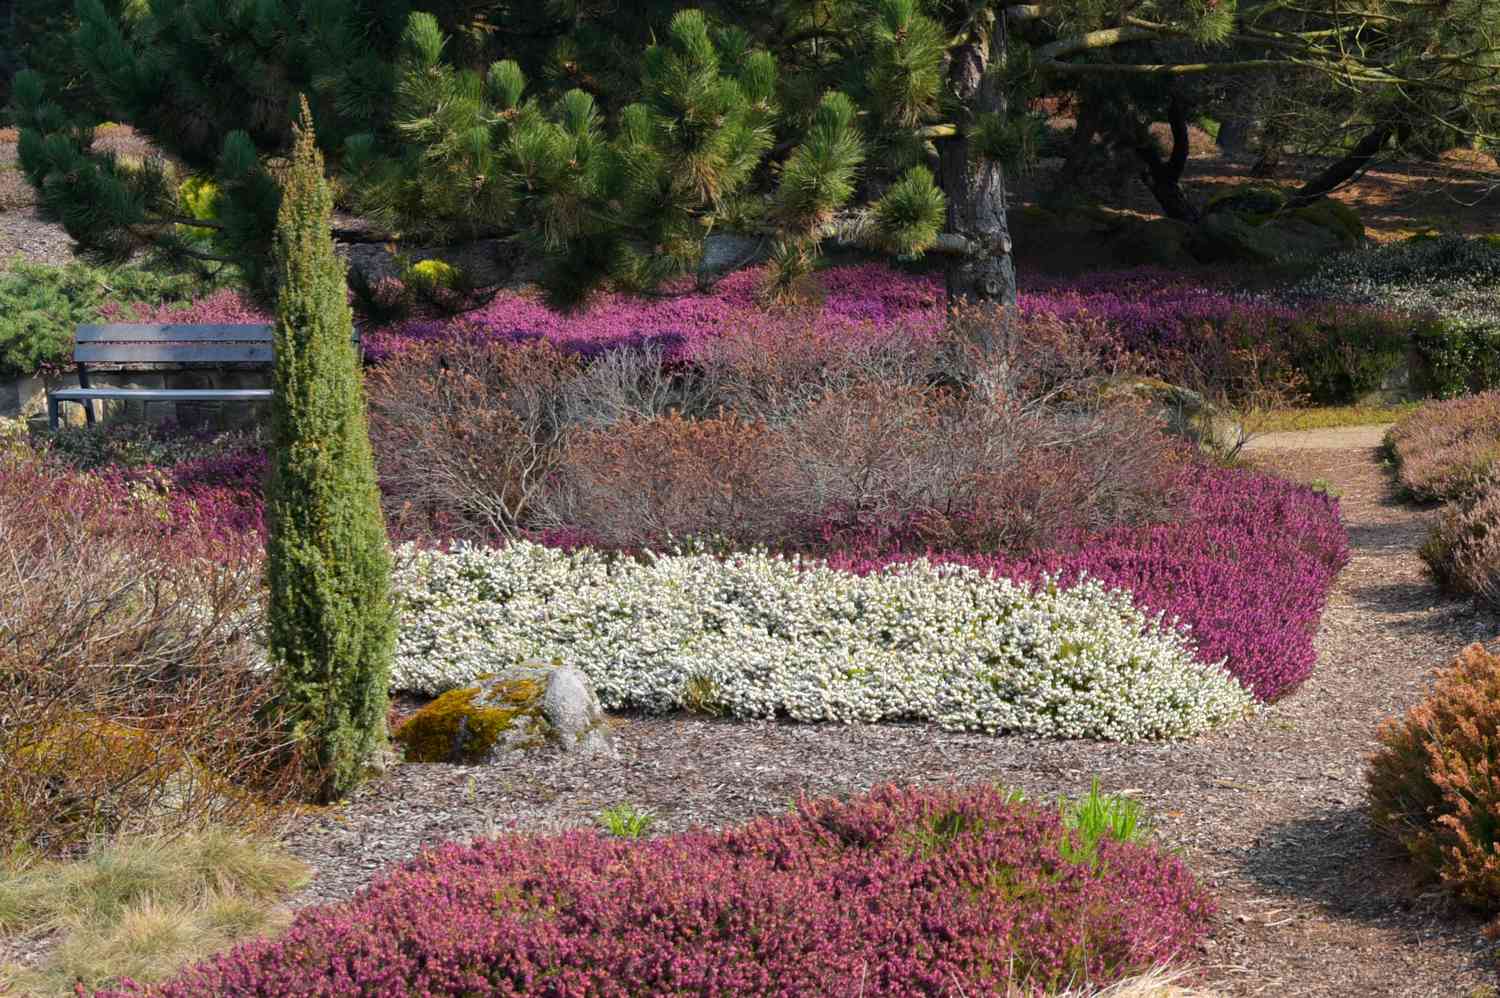 Zwergwacholderbaum in der Mitte des Gartens mit weißen und rosafarbenen Büschen im Sonnenlicht